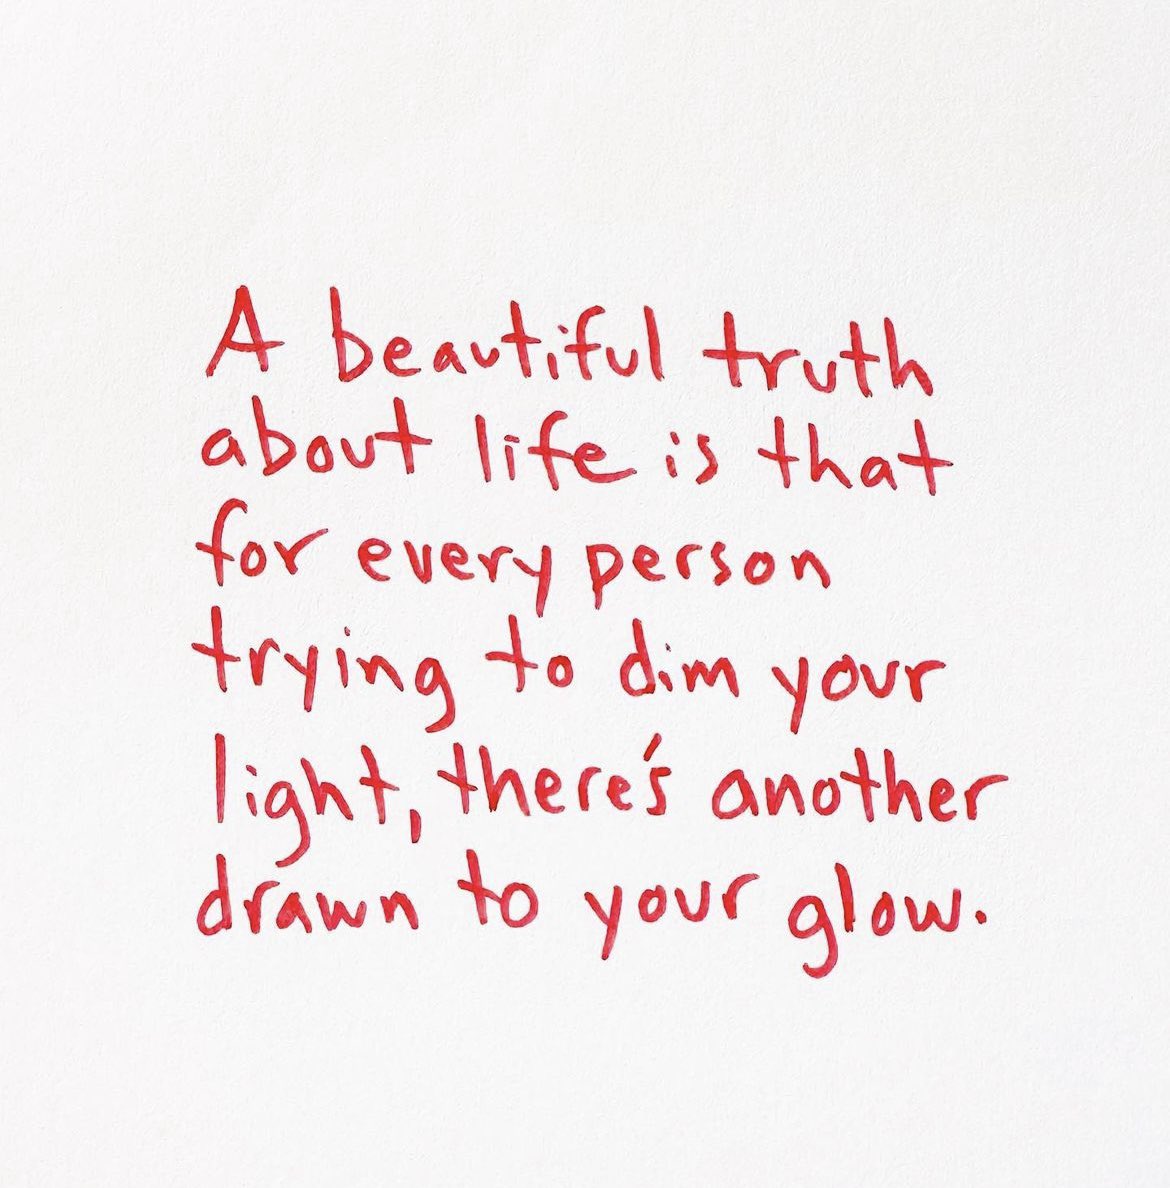 #thoughtsoftheday #BlessedAndGrateful ❤️🙏